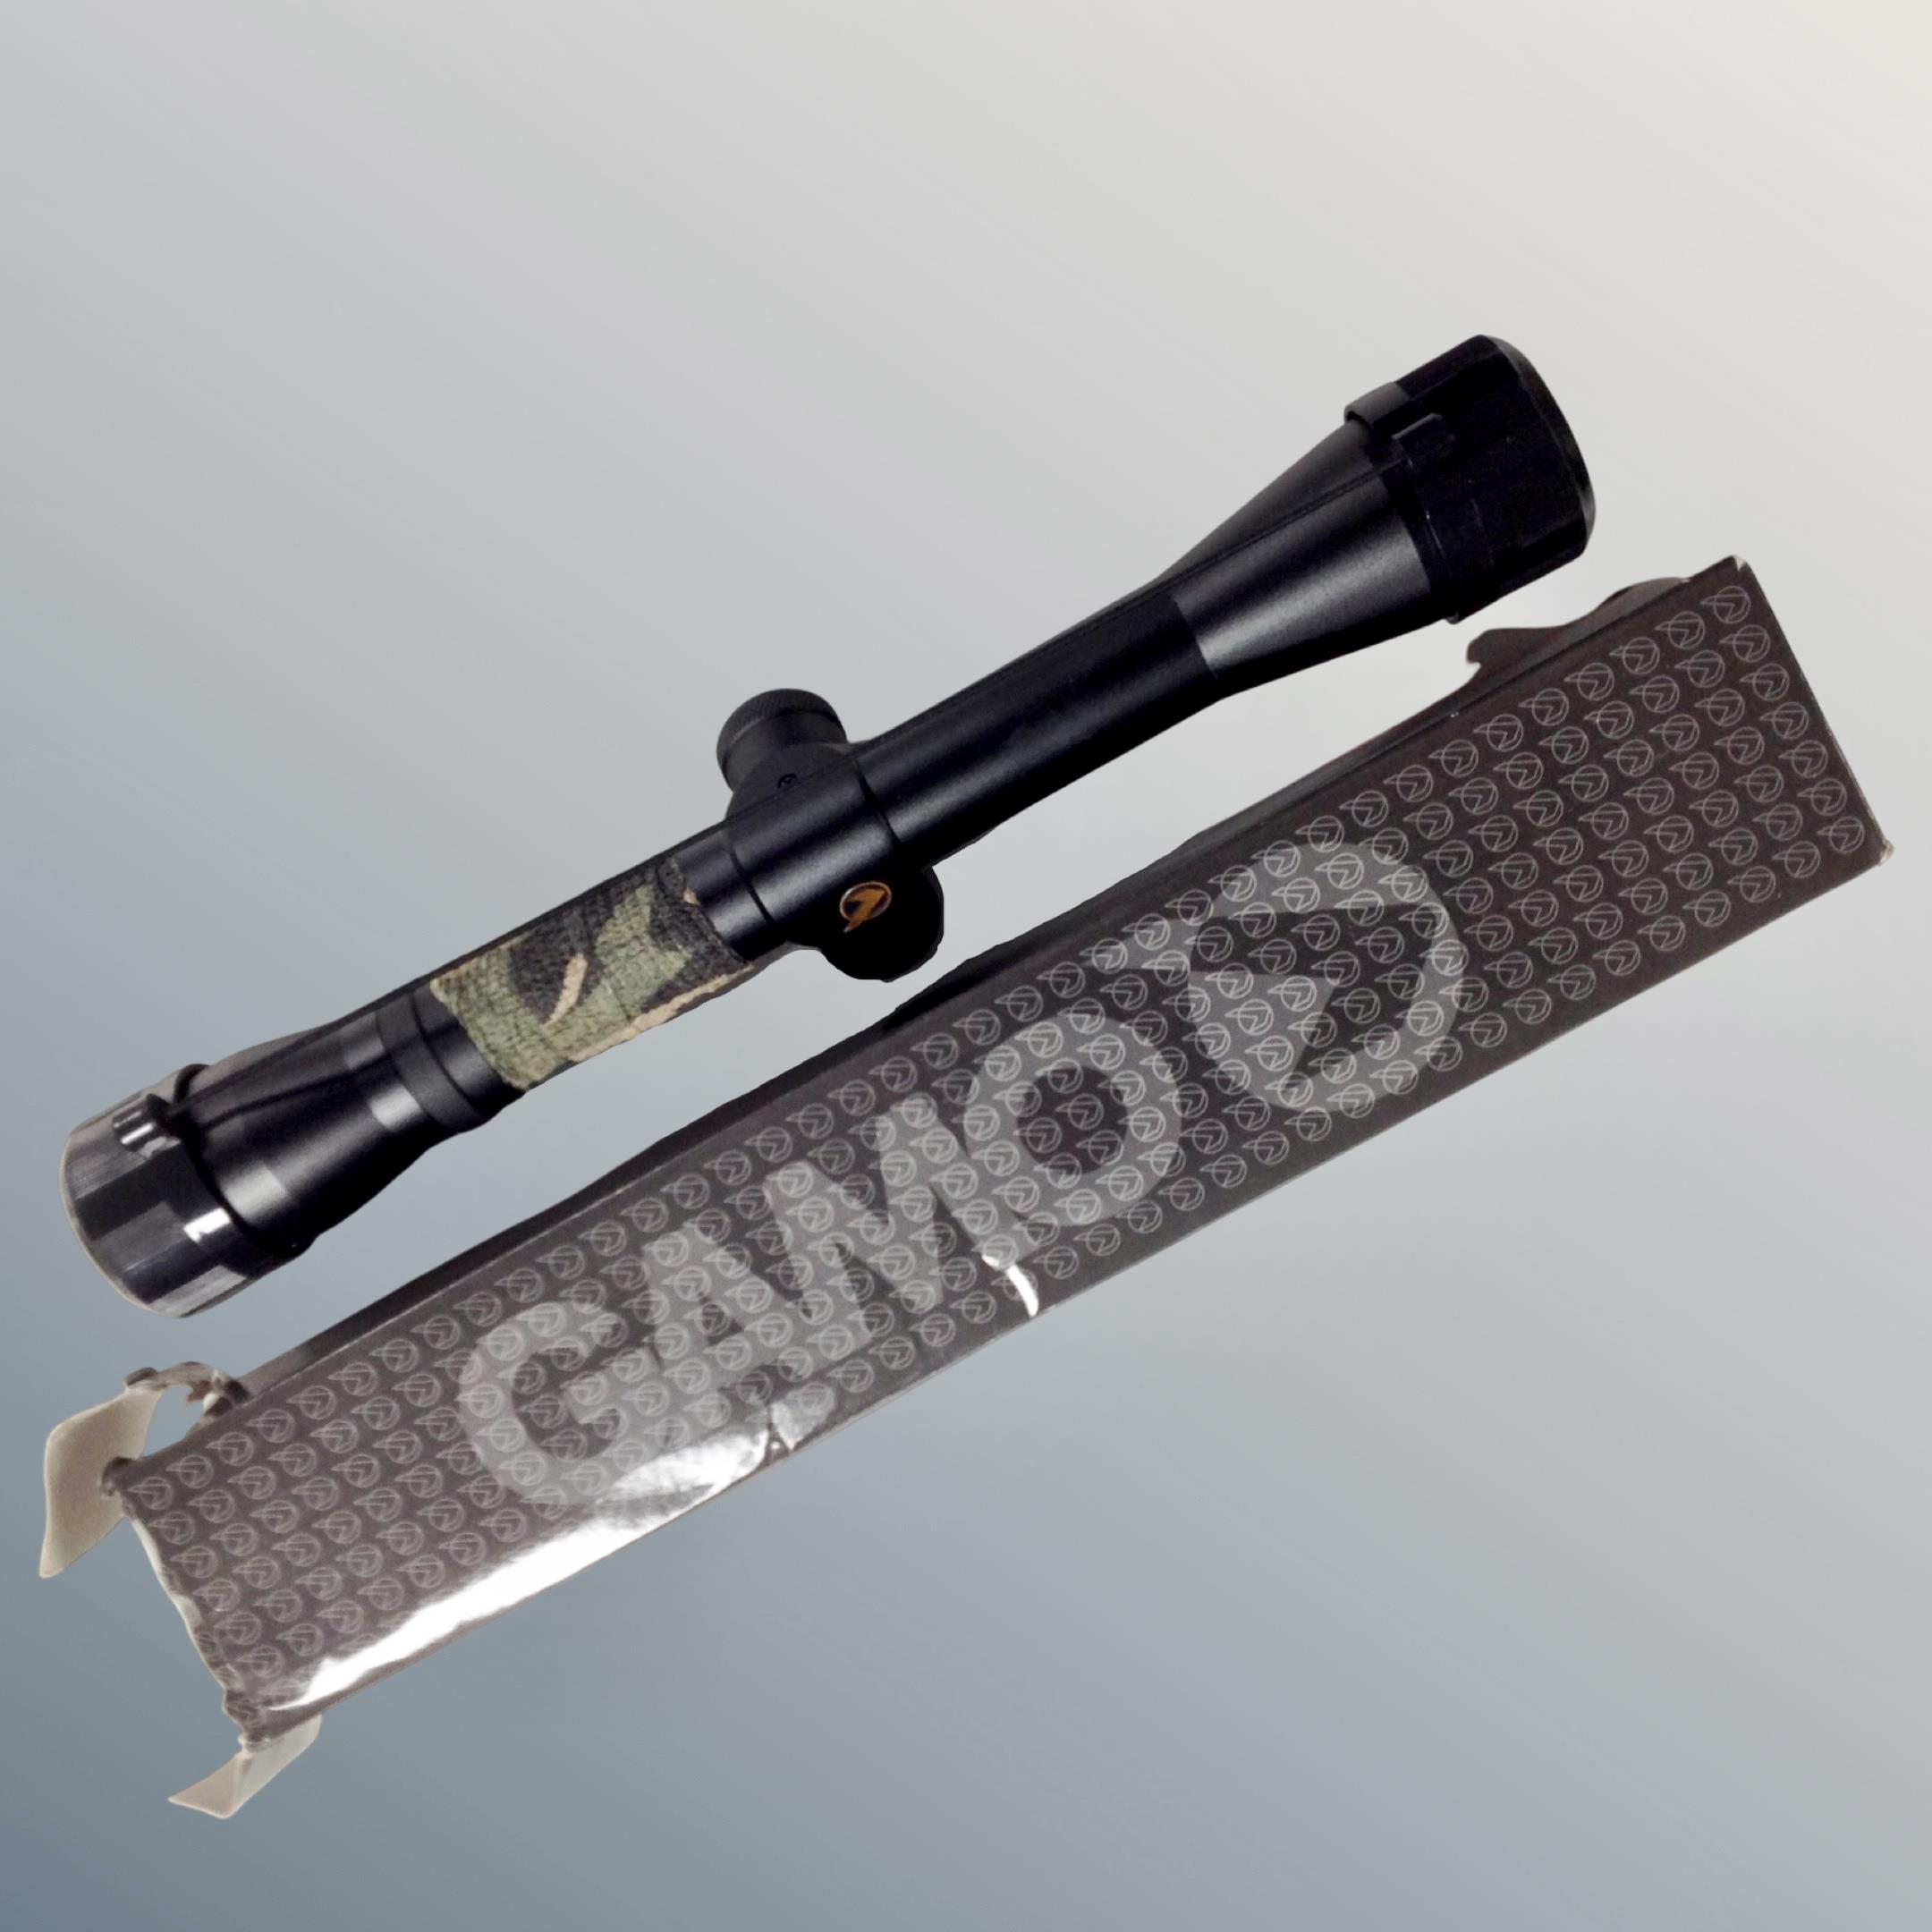 A Gamo 4x32 WR rifle scope in original box.